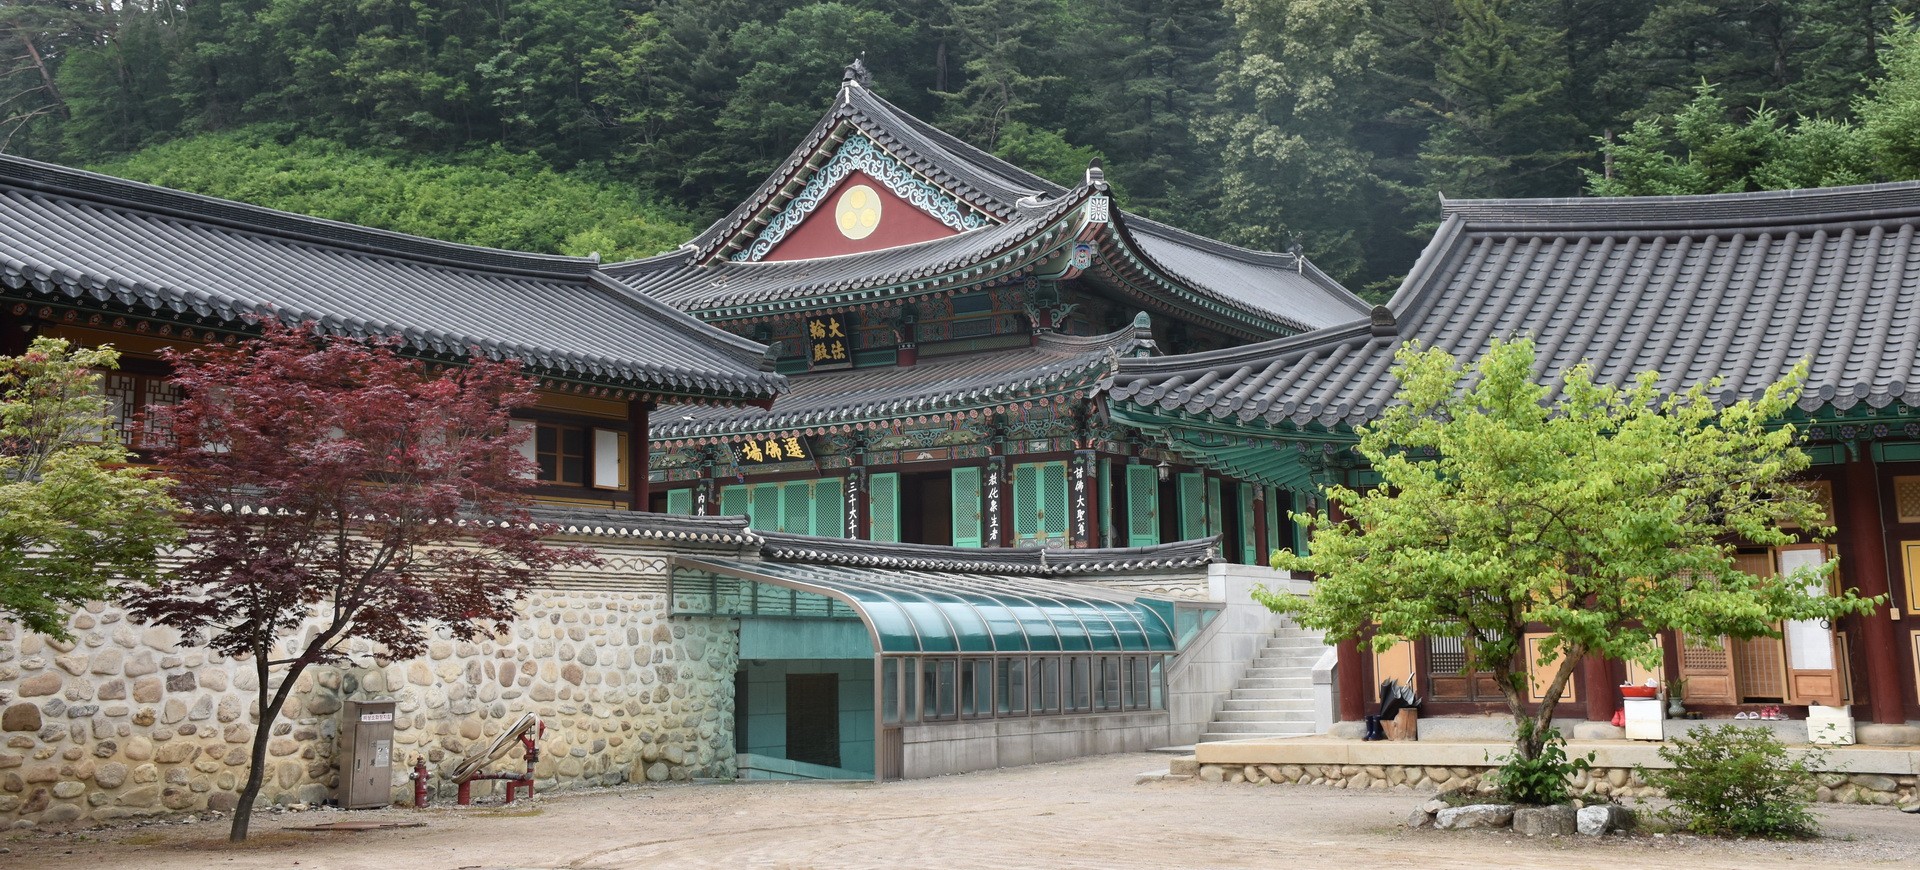 Temple Pyeongchang Temple Wolijeongsa en Corée du Sud